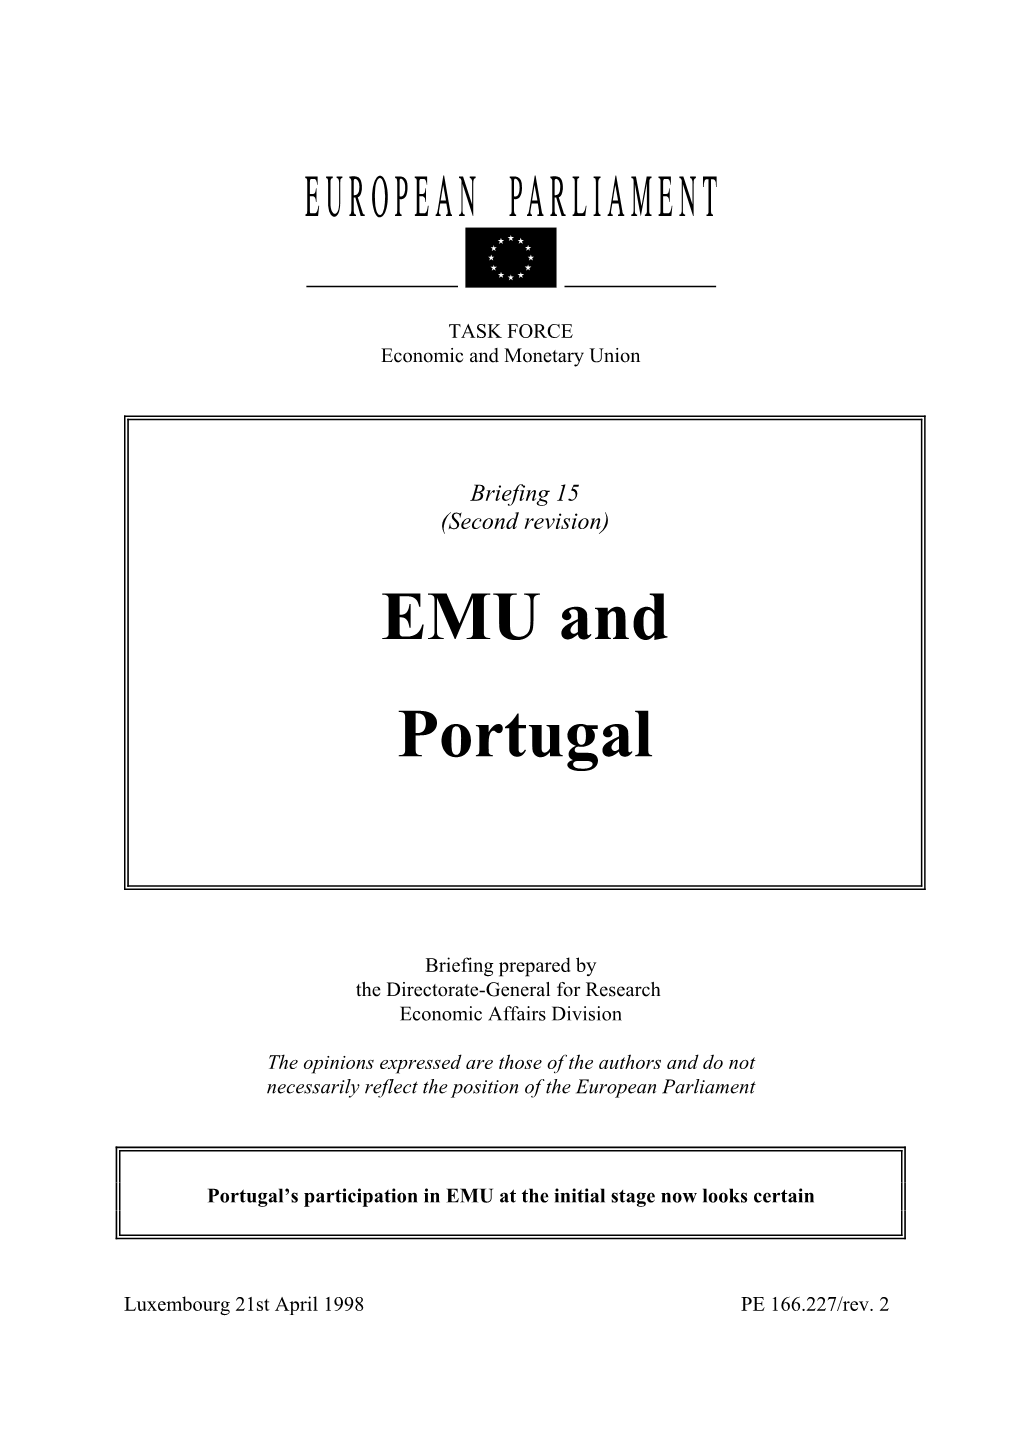 EMU and Portugal